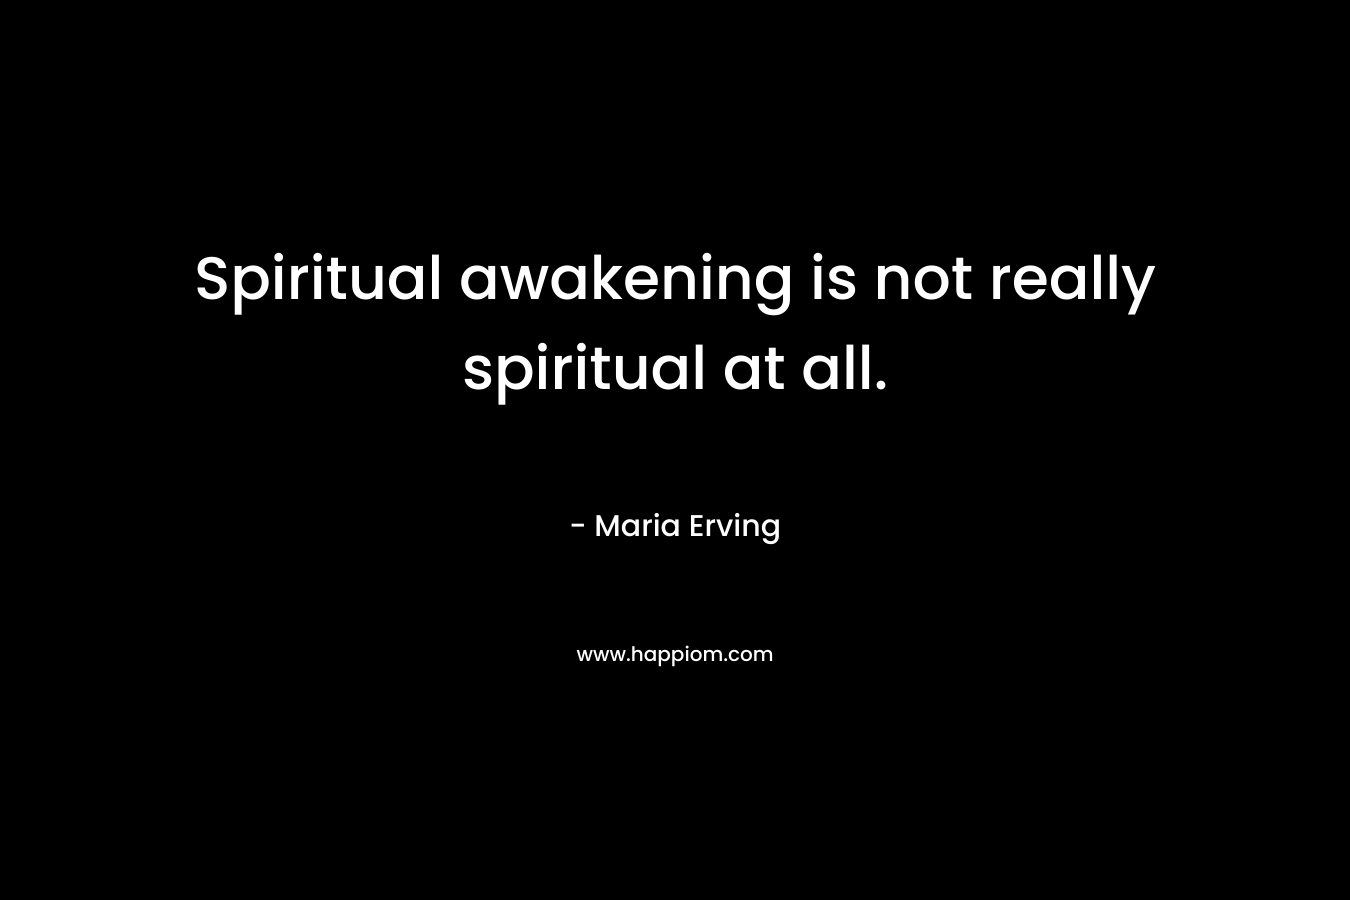 Spiritual awakening is not really spiritual at all.